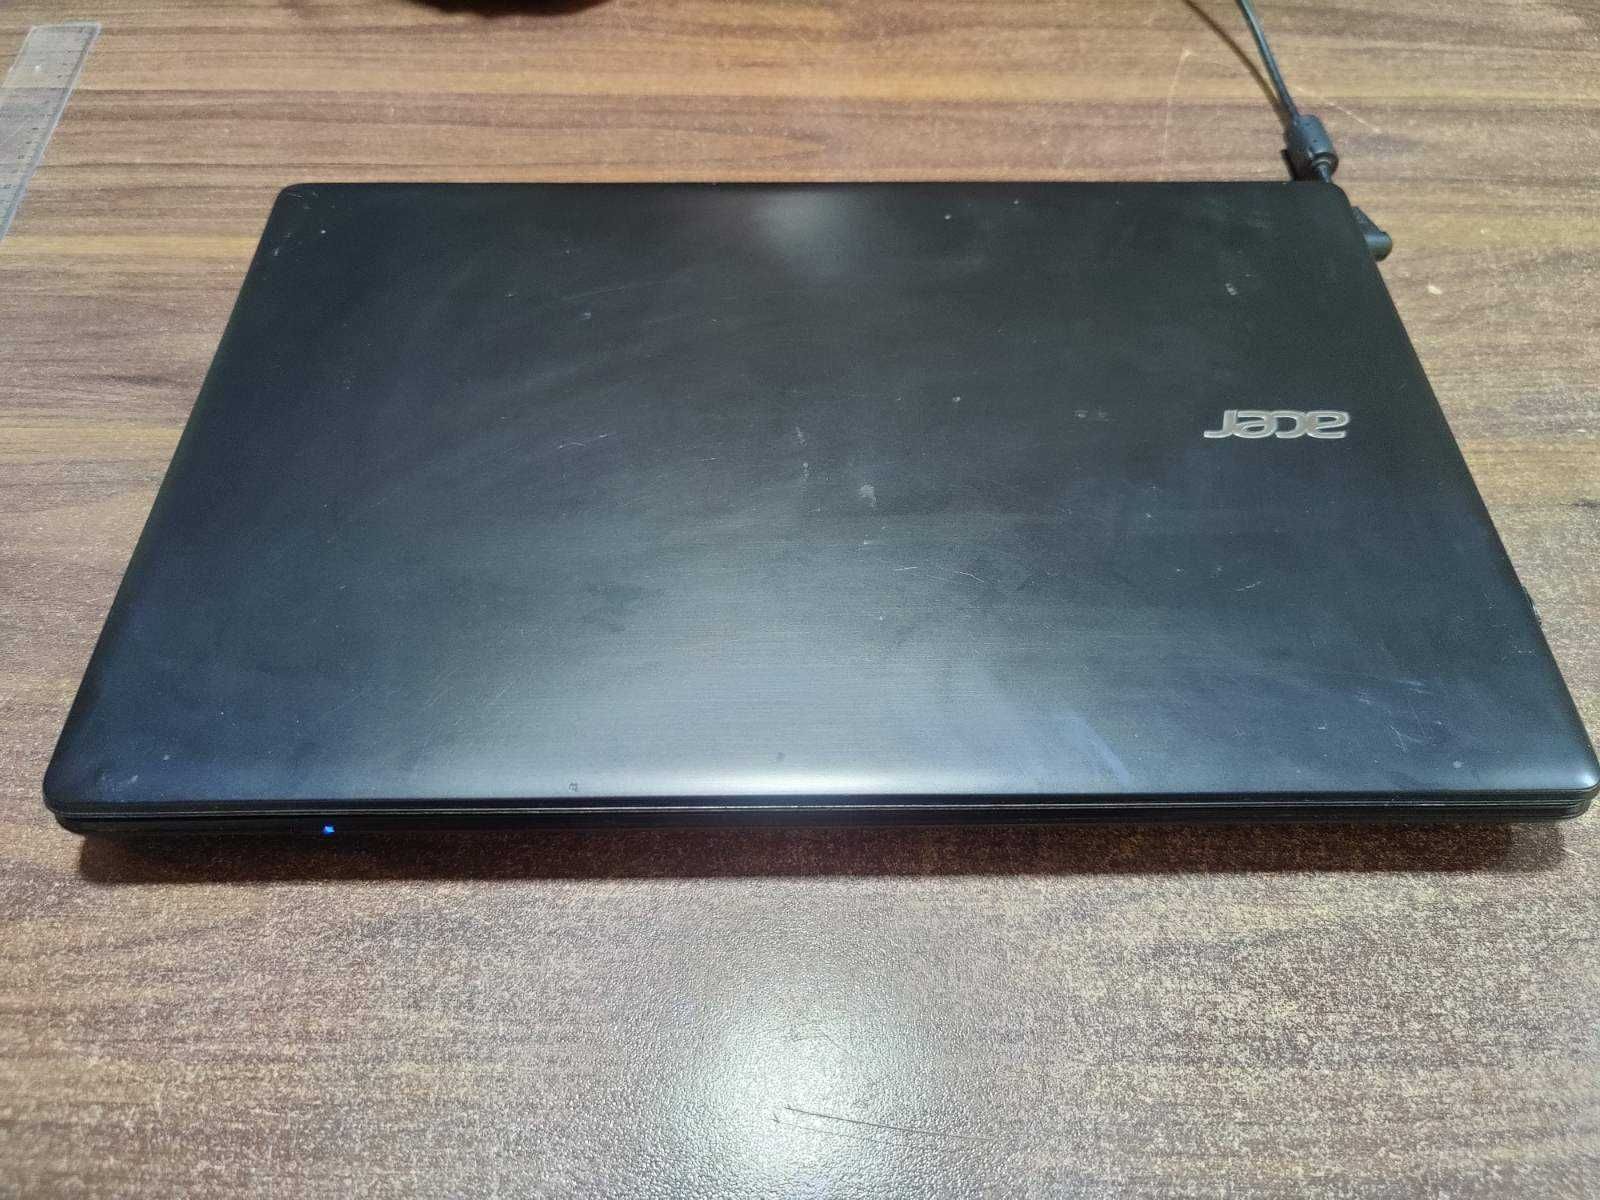 Acer E5- 572 , Nvidia 940m, SSD 250gb, i7-4712 2.30GHz